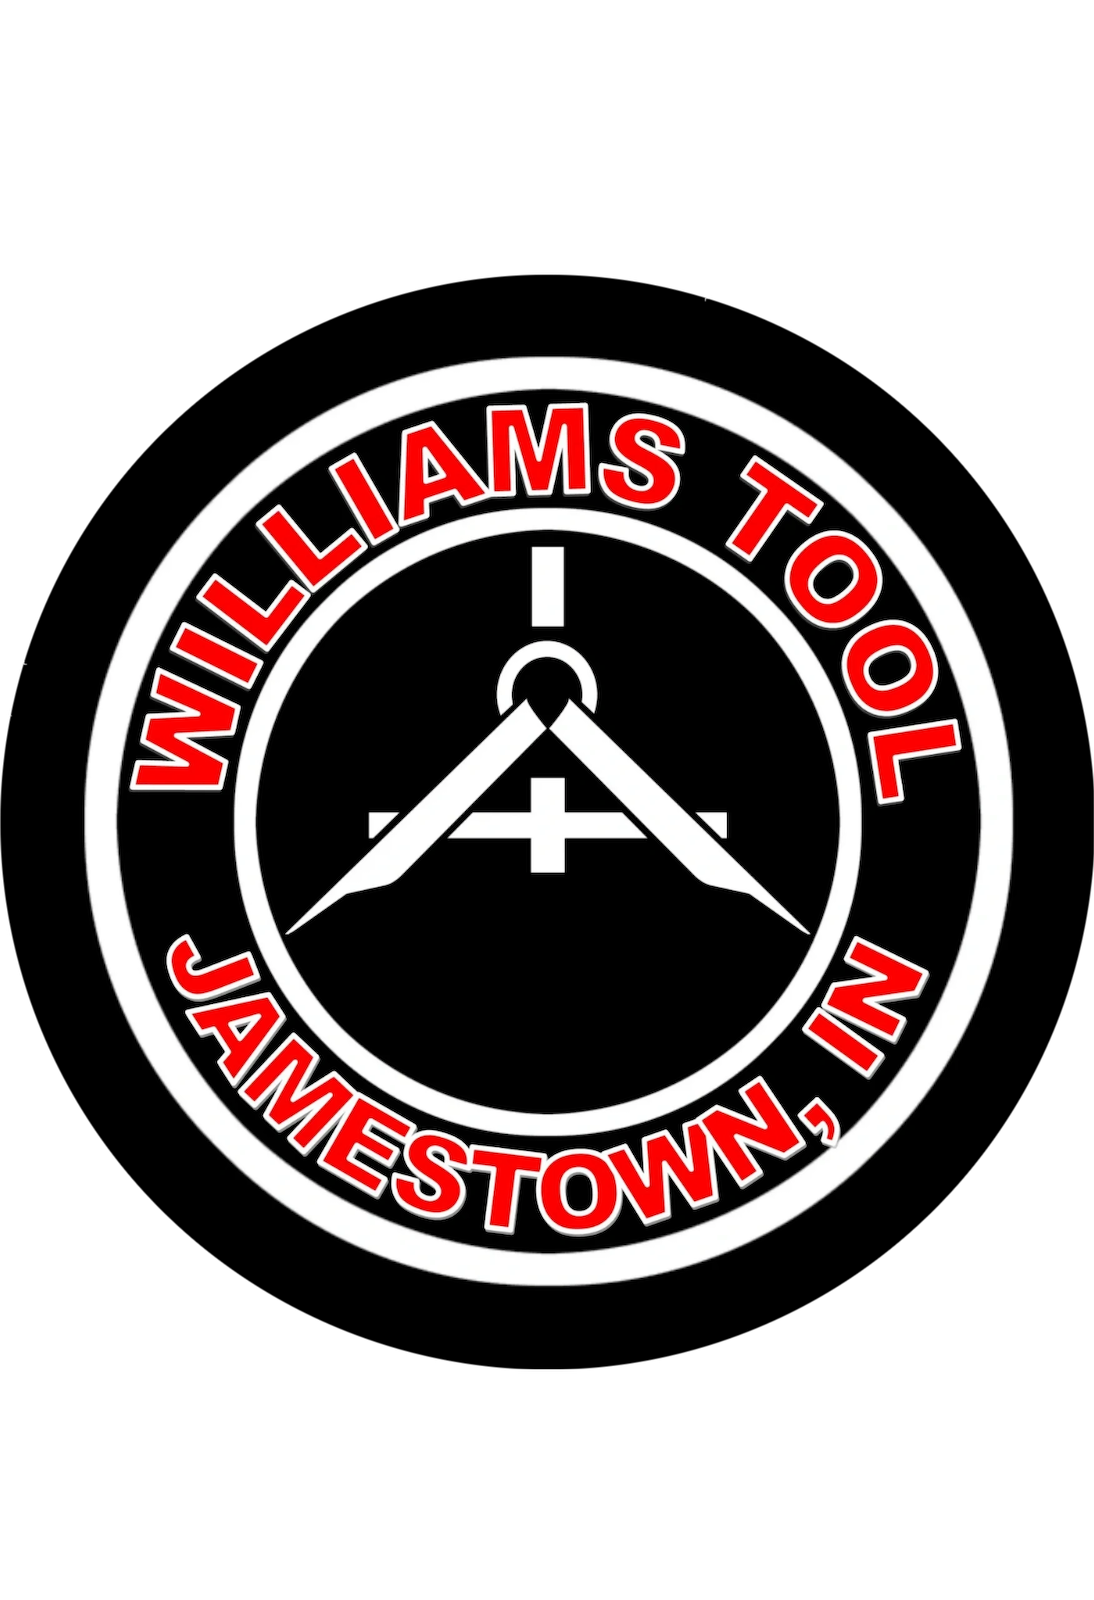 Williams Tool & Machine